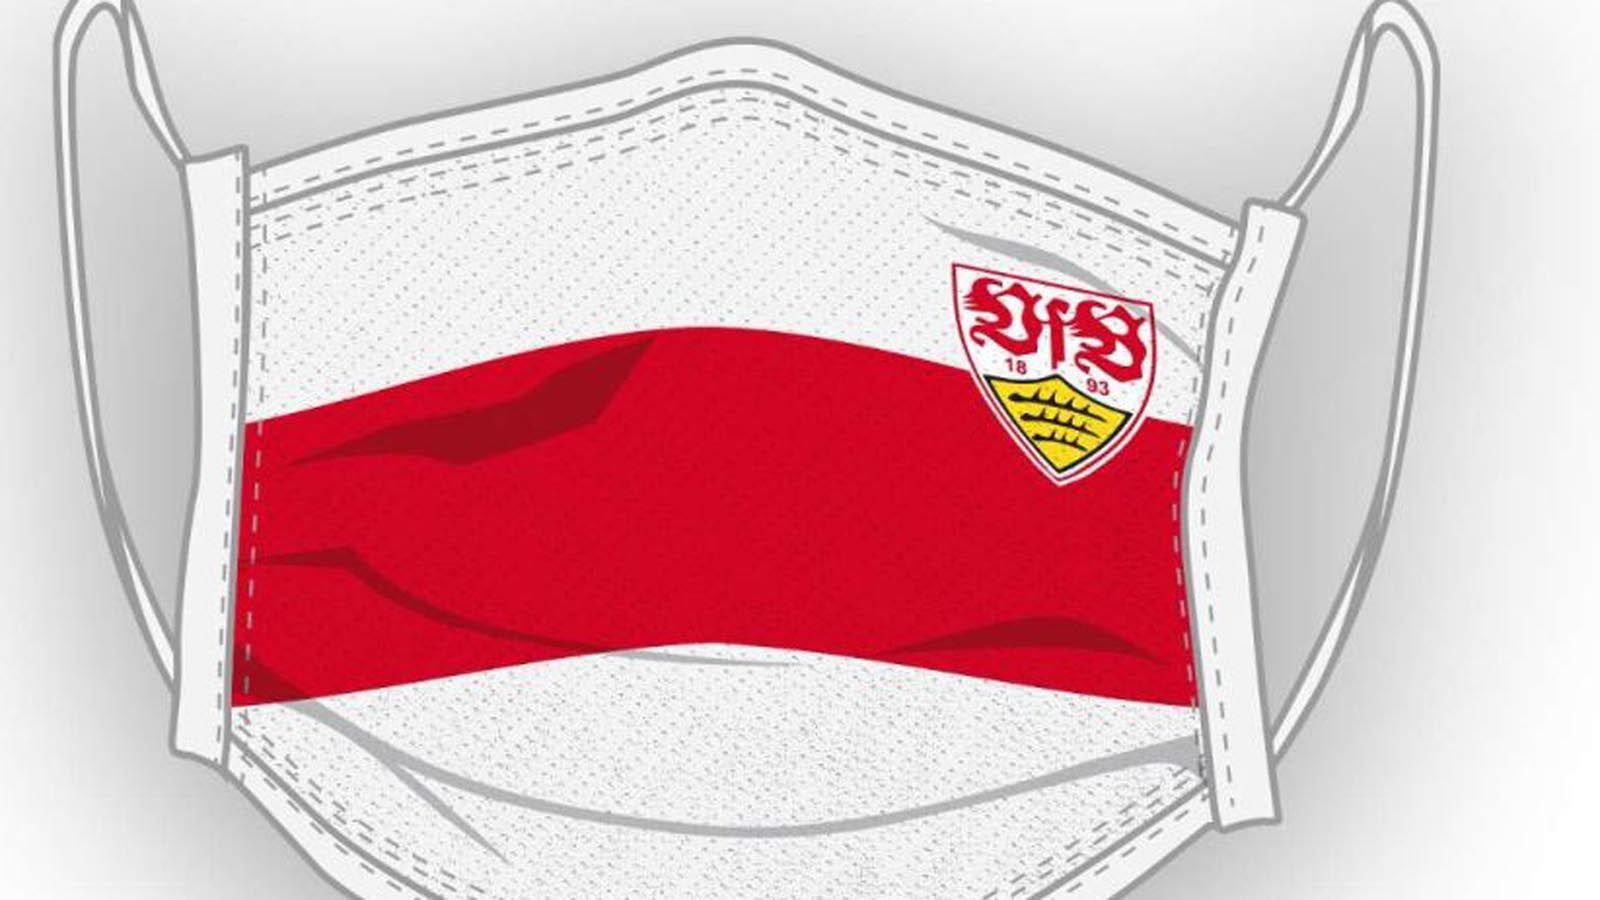 
                <strong>VfB Stuttgart</strong><br>
                Die Schwaben bieten gleich drei verschiedene Modelle an, doch insbesondere das Brustring-Modell erfreut sich großer Beliebtheit. Der VfB spendet den Erlös an die Corona-Soforthilfe und an die Organisation "Vfbfairplay".  
              